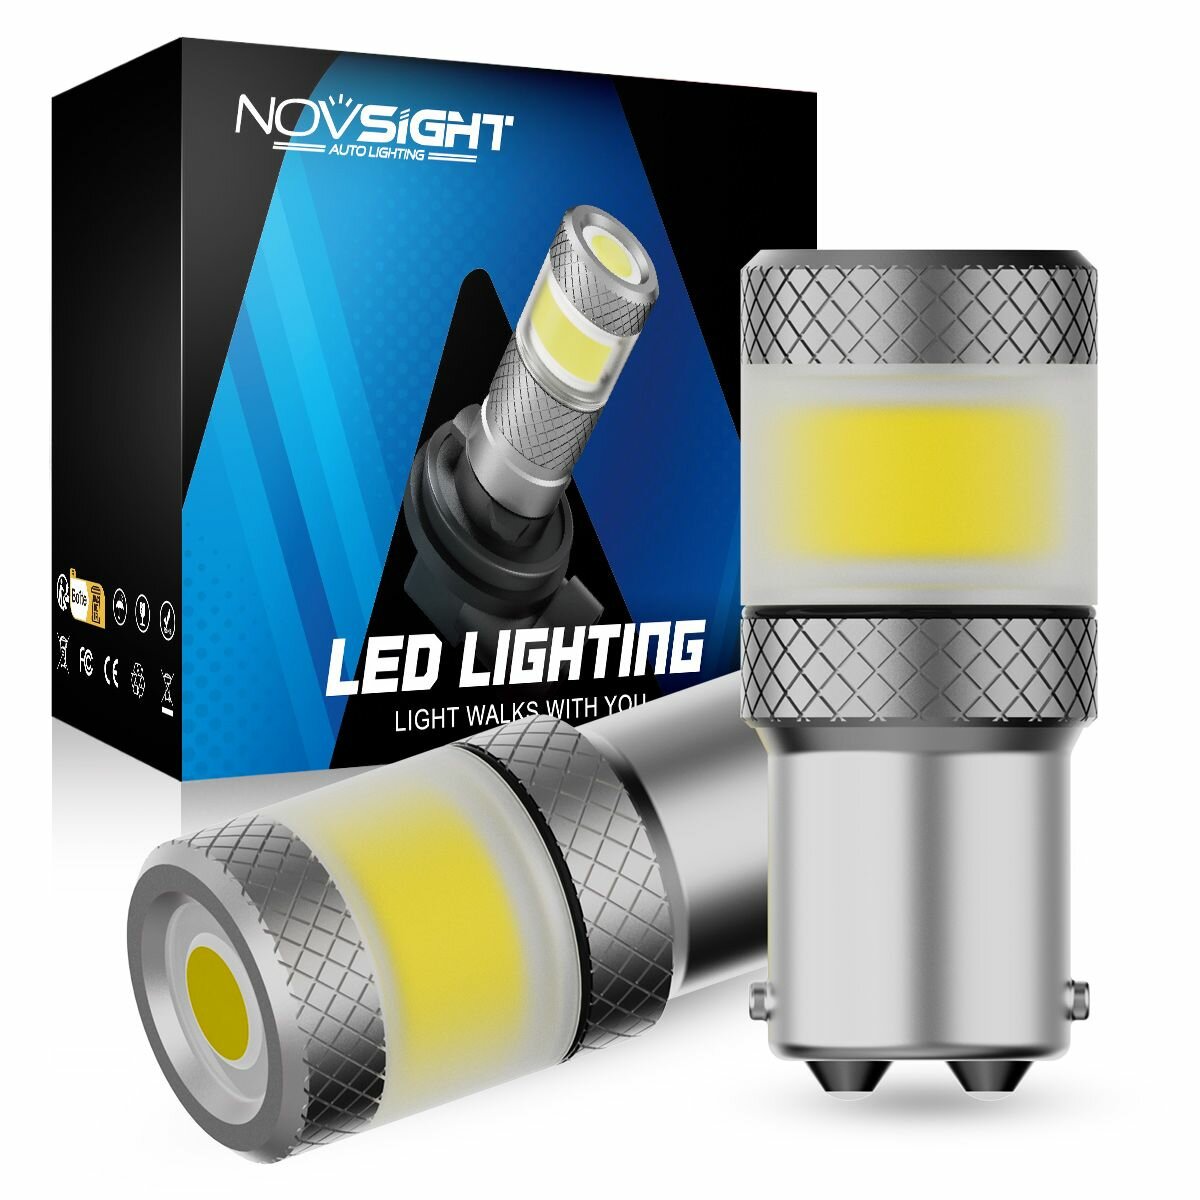 Светодиодная лампа Novsight SL7 1157 P21/5W цоколь BAY15D 2шт двухконтактная белый свет LED автомобильная